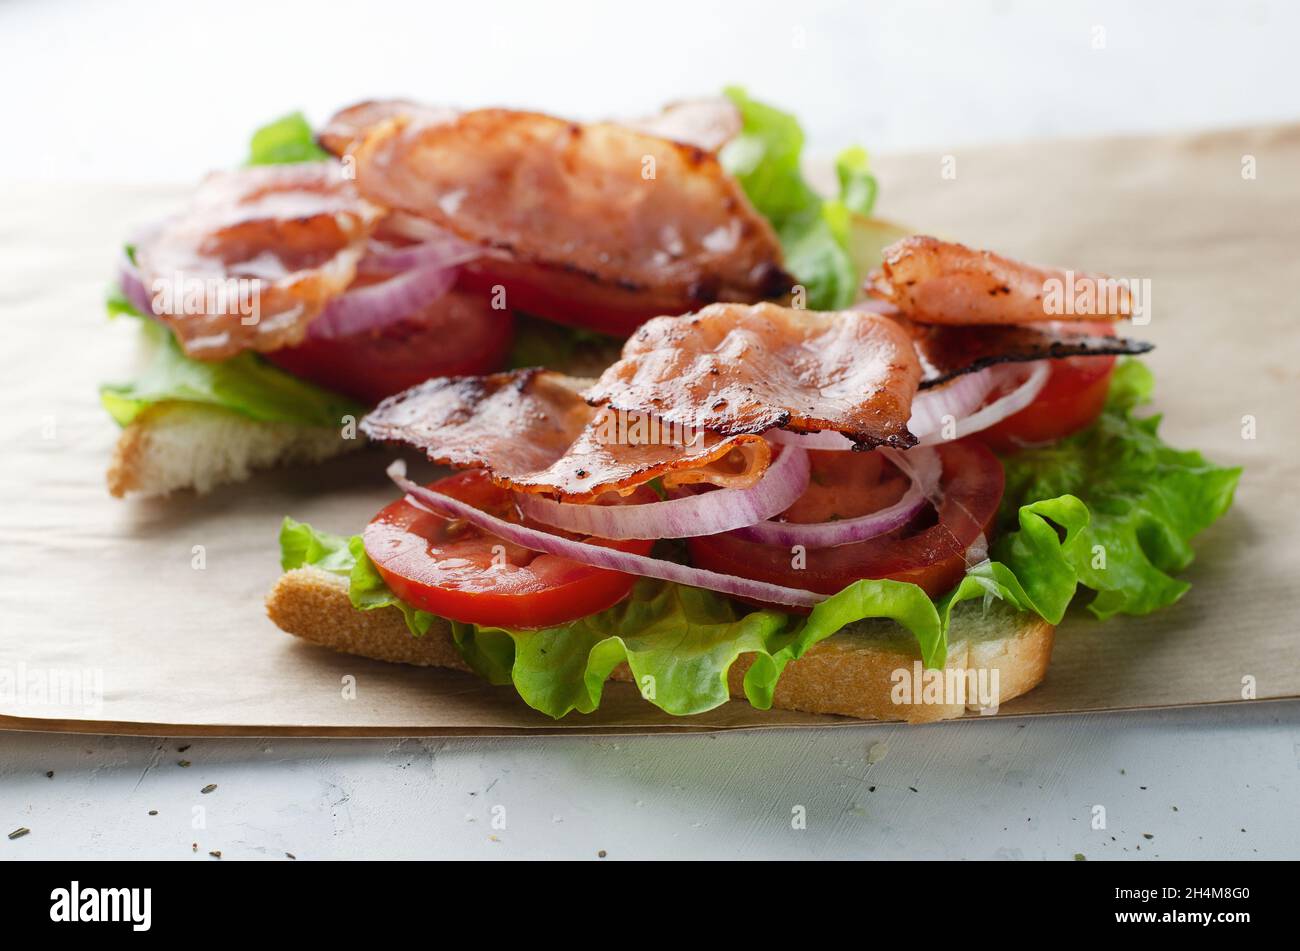 Sándwich de tocino a la parrilla sobre papel con ensalada, tomate y cebolla sobre una mesa blanca Foto de stock